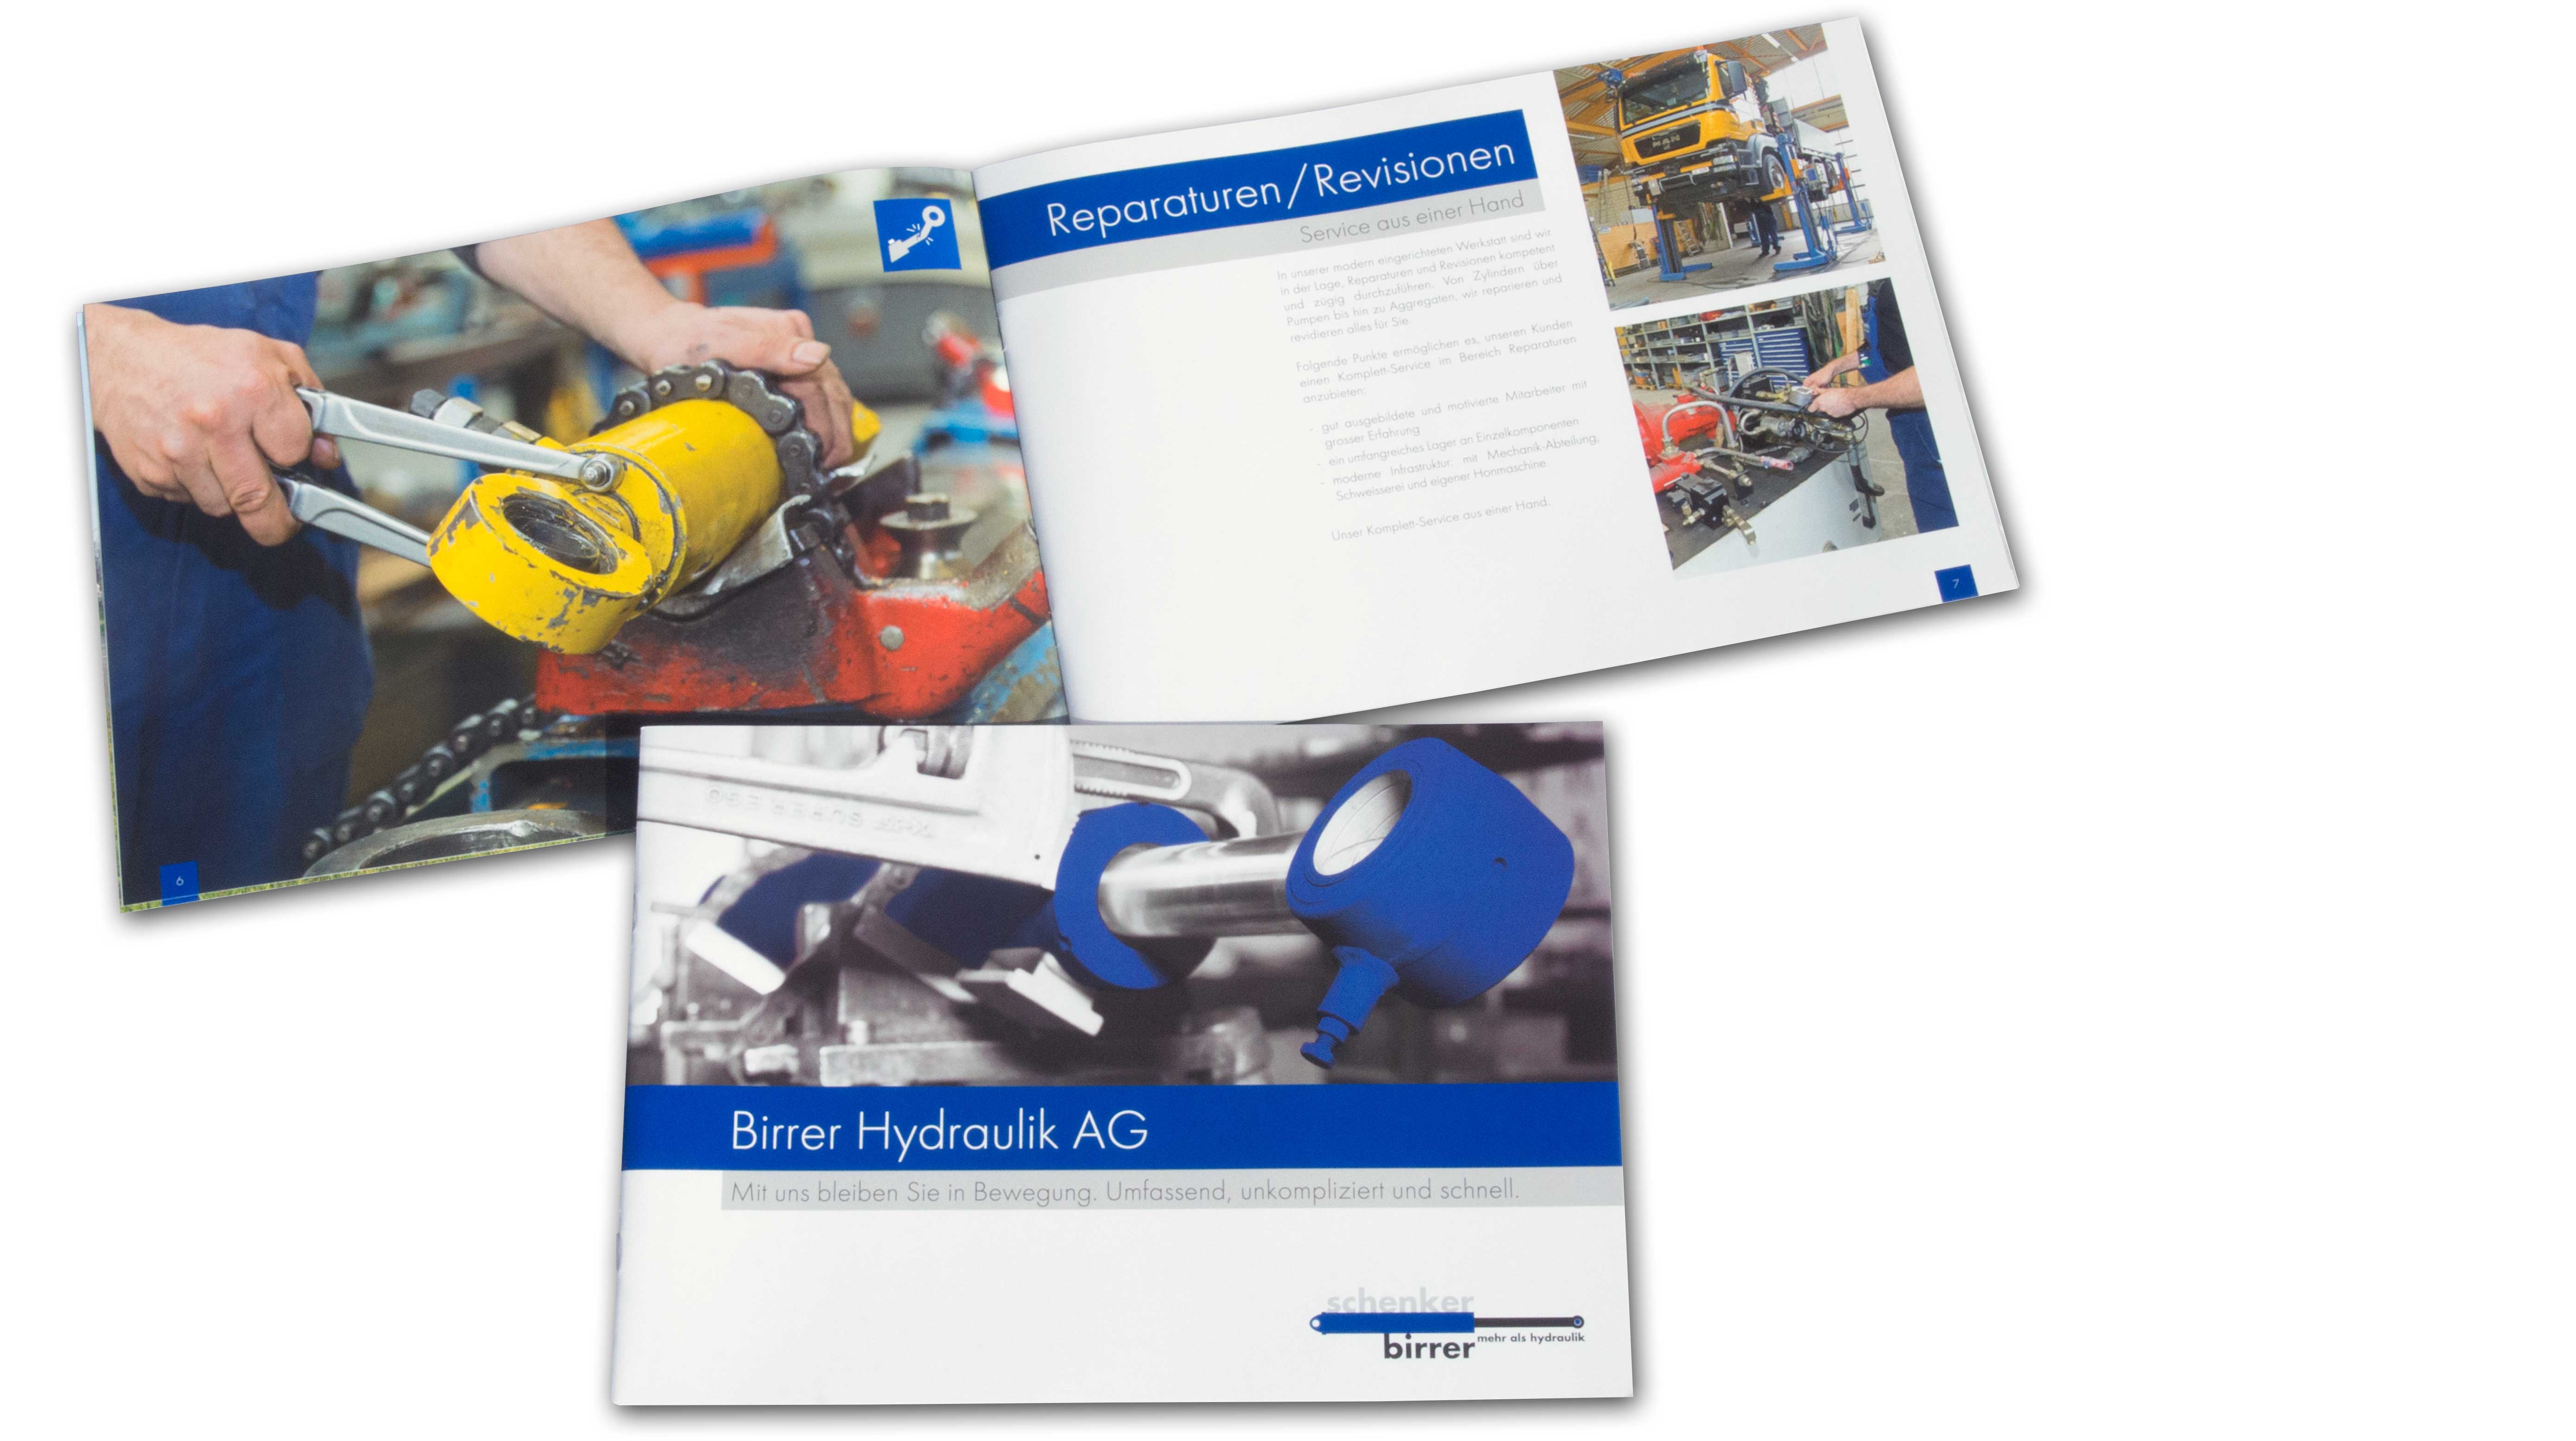 Image-Broschüre Birrer Hydraulik AG